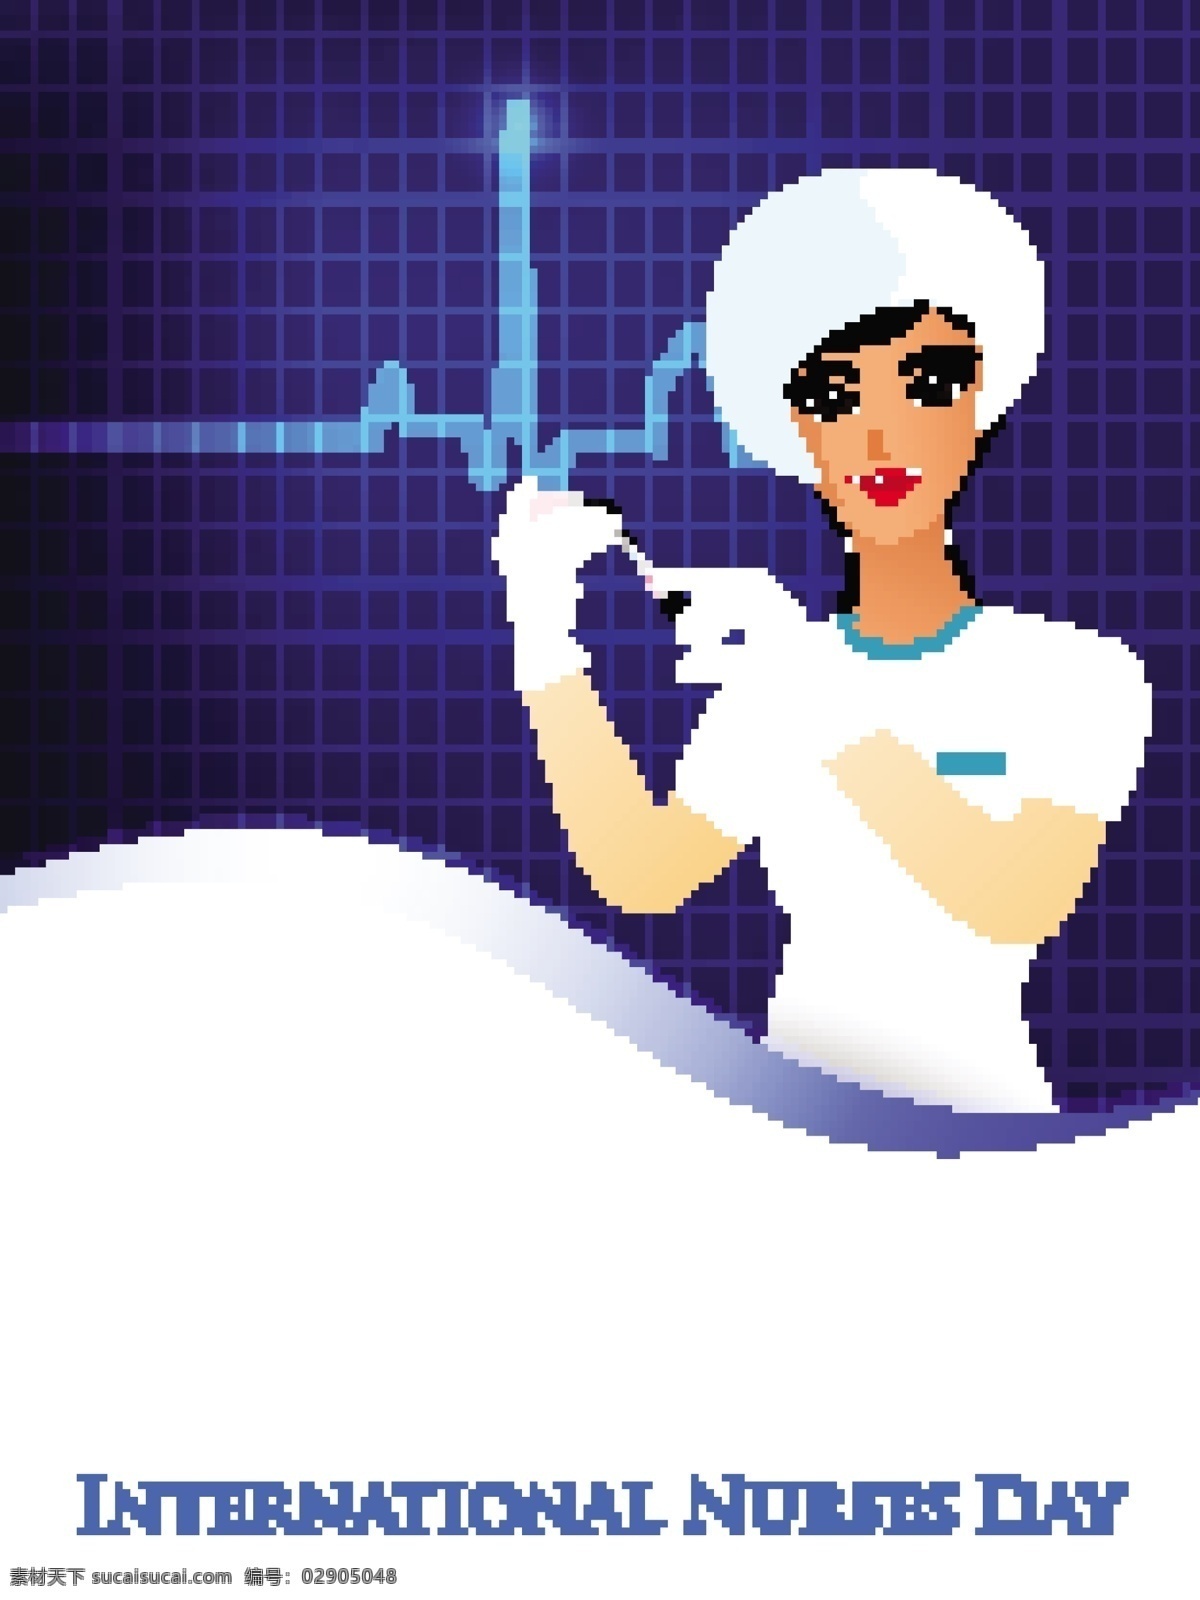 国际护士节 概念 一个 护士 插图 矢量图 矢量人物